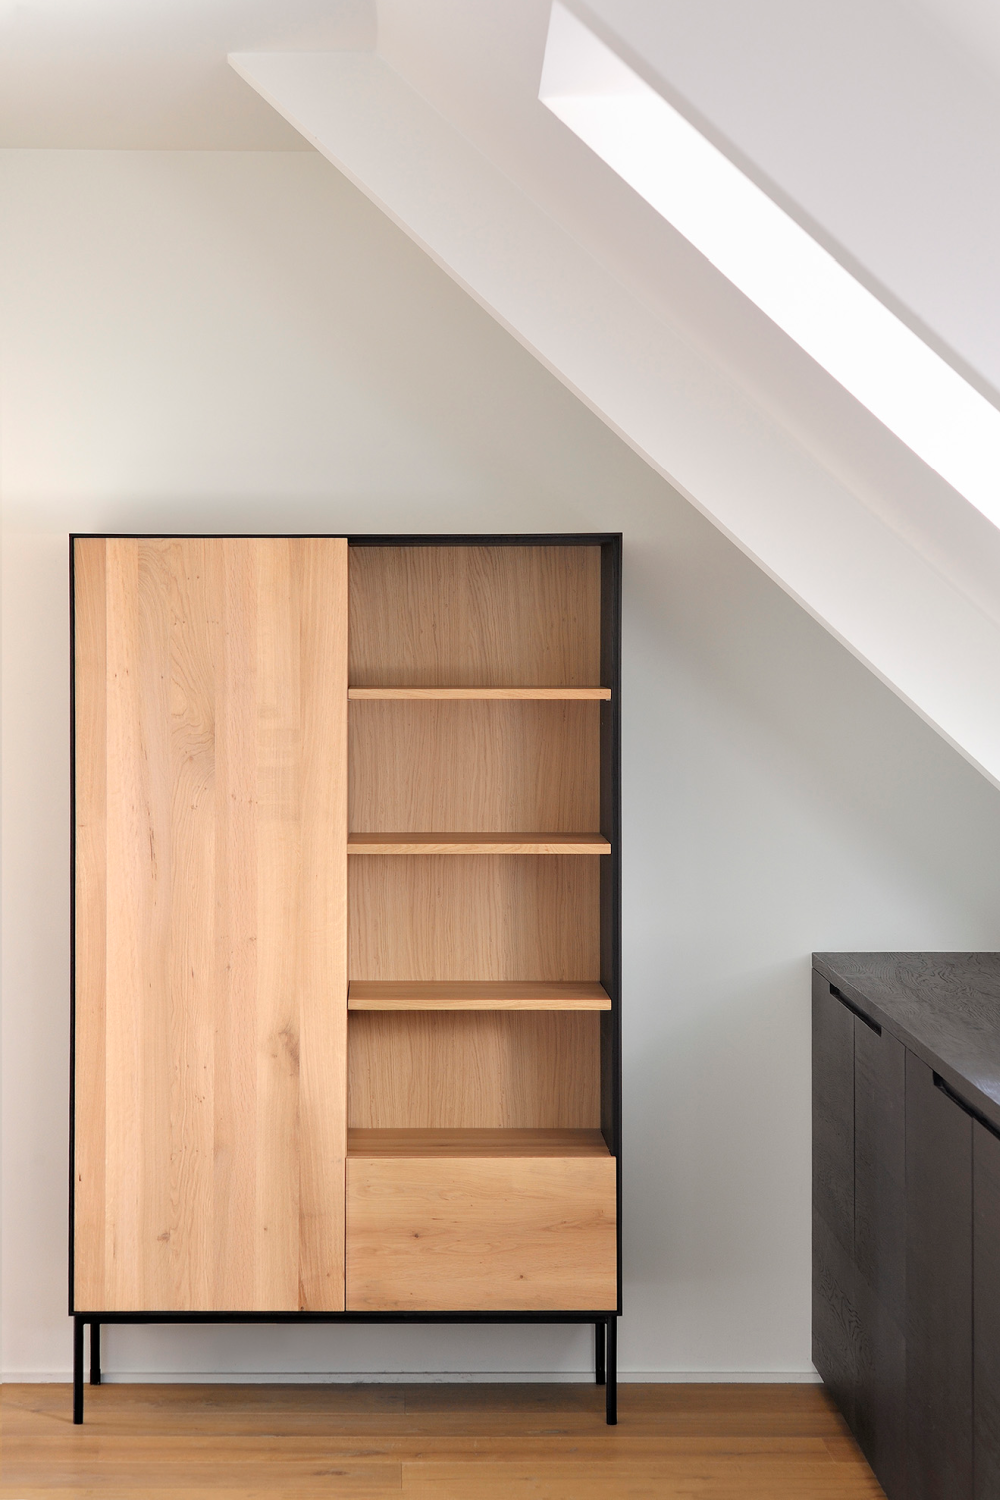 1-Door Oak Wood Cabinet | Ethnicraft Blackbird | OROA